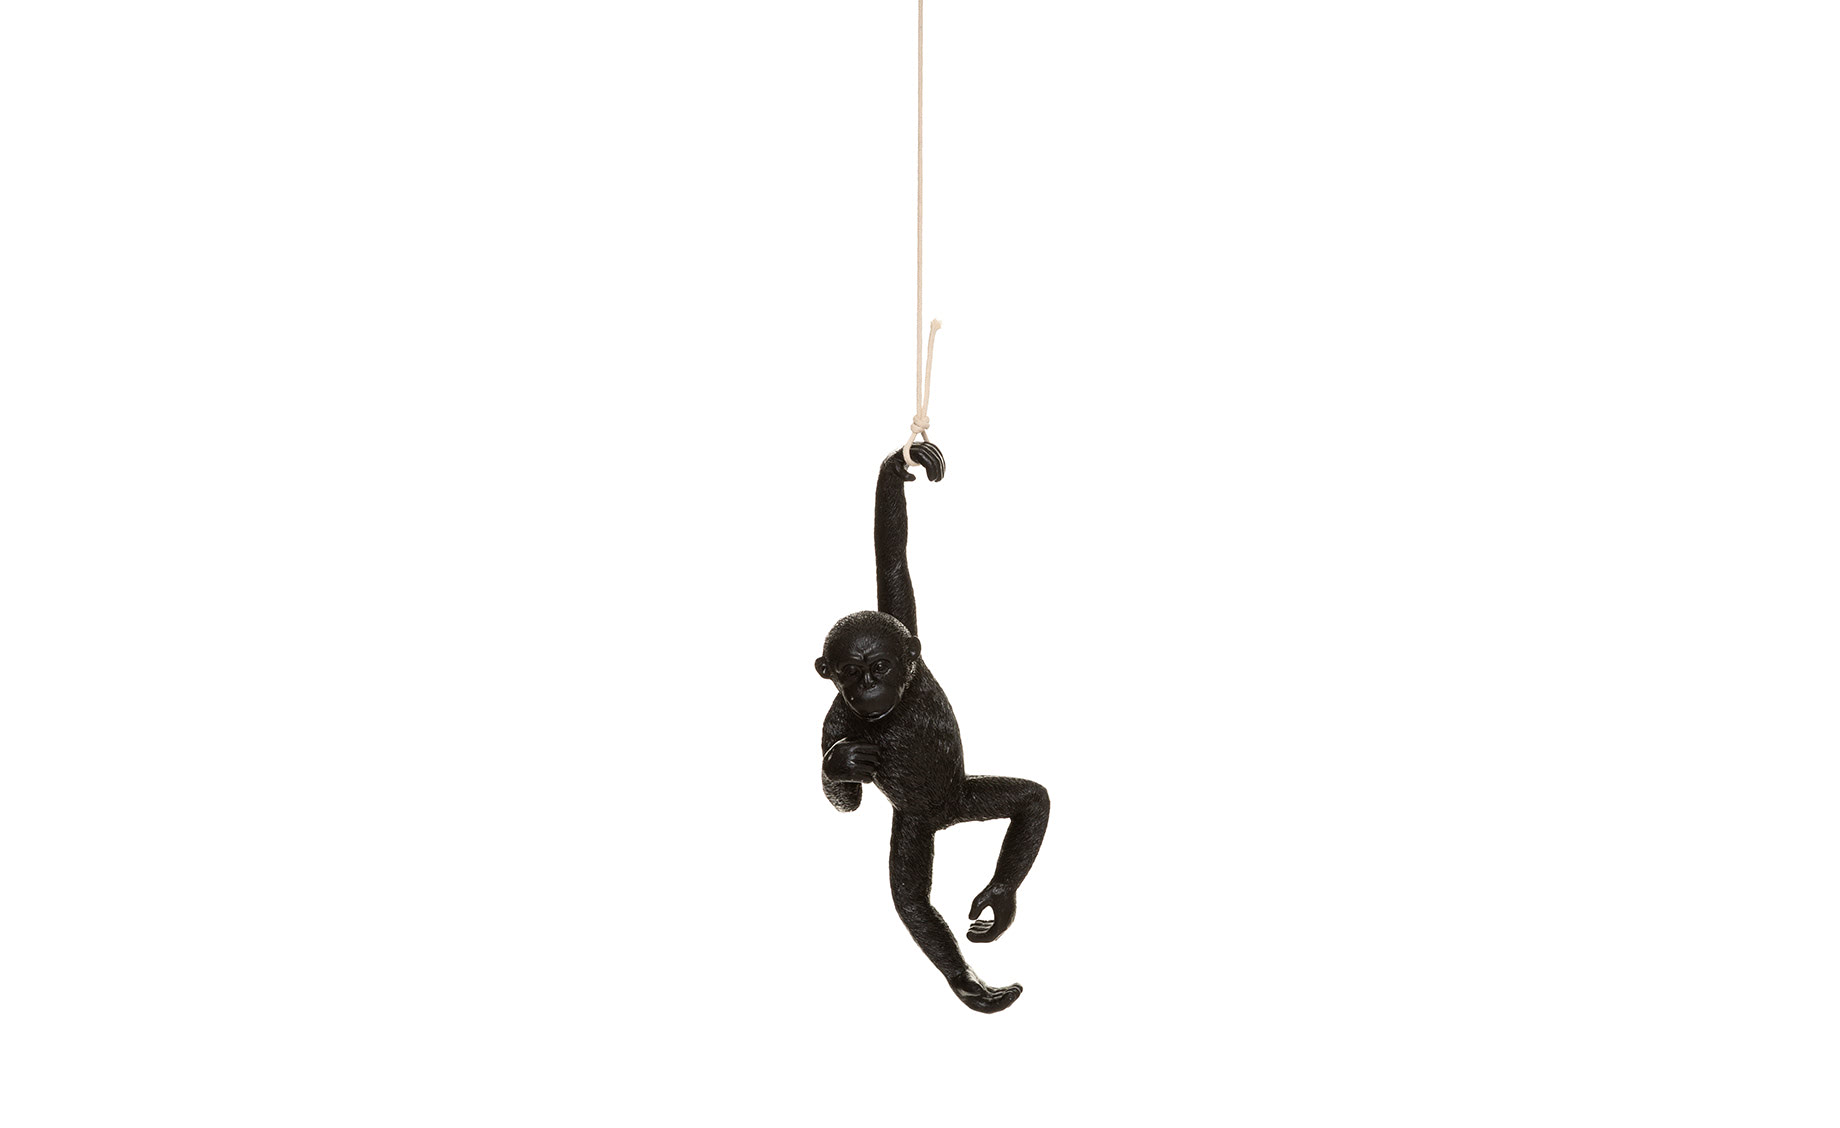 Dekoracija Hanging Monkey 21x39,5cm više vrsta